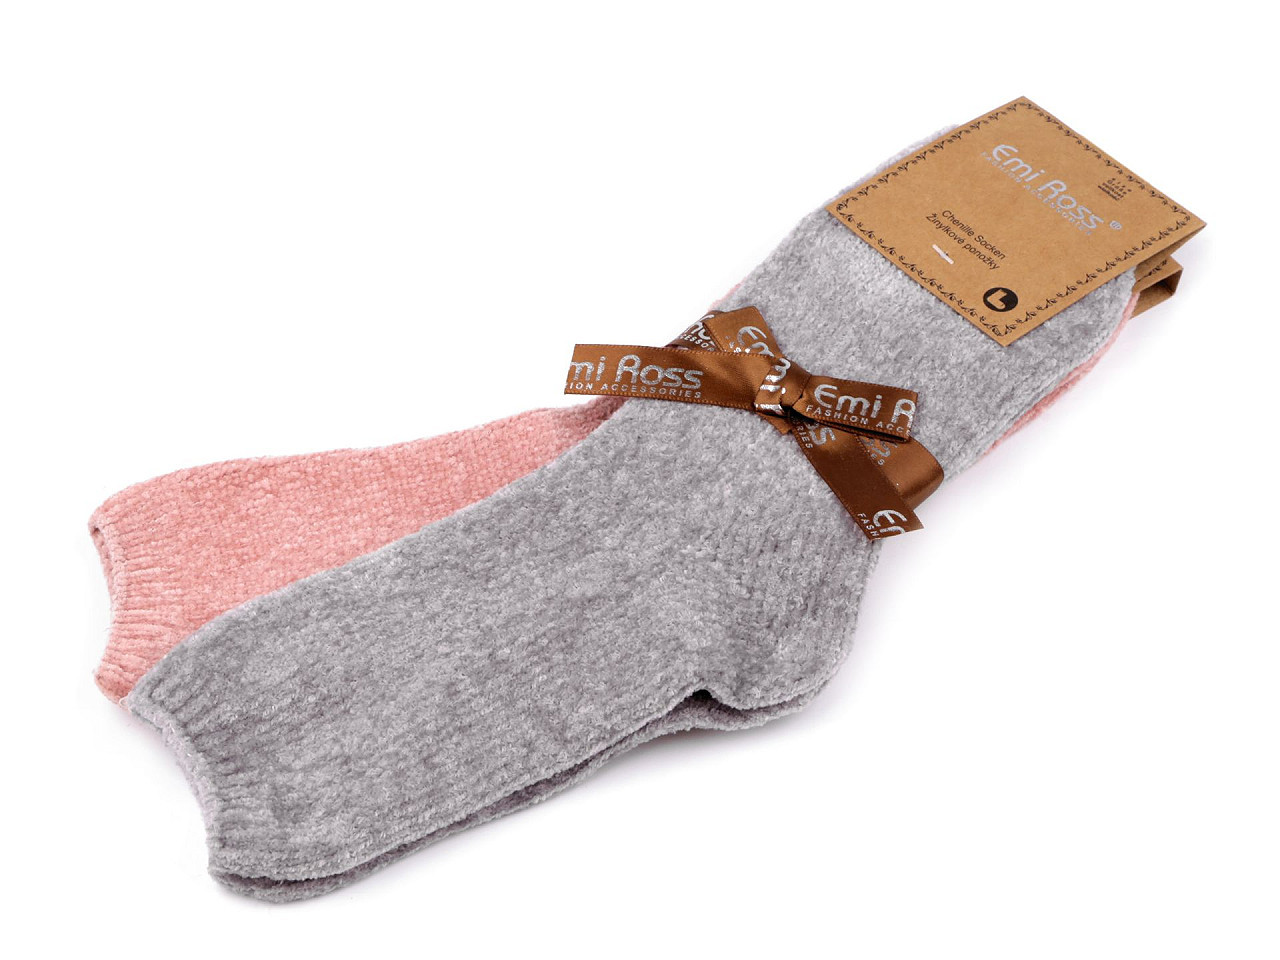 Dámské žinylkové ponožky Emi Ross, barva 18 (vel. 35-38) mix